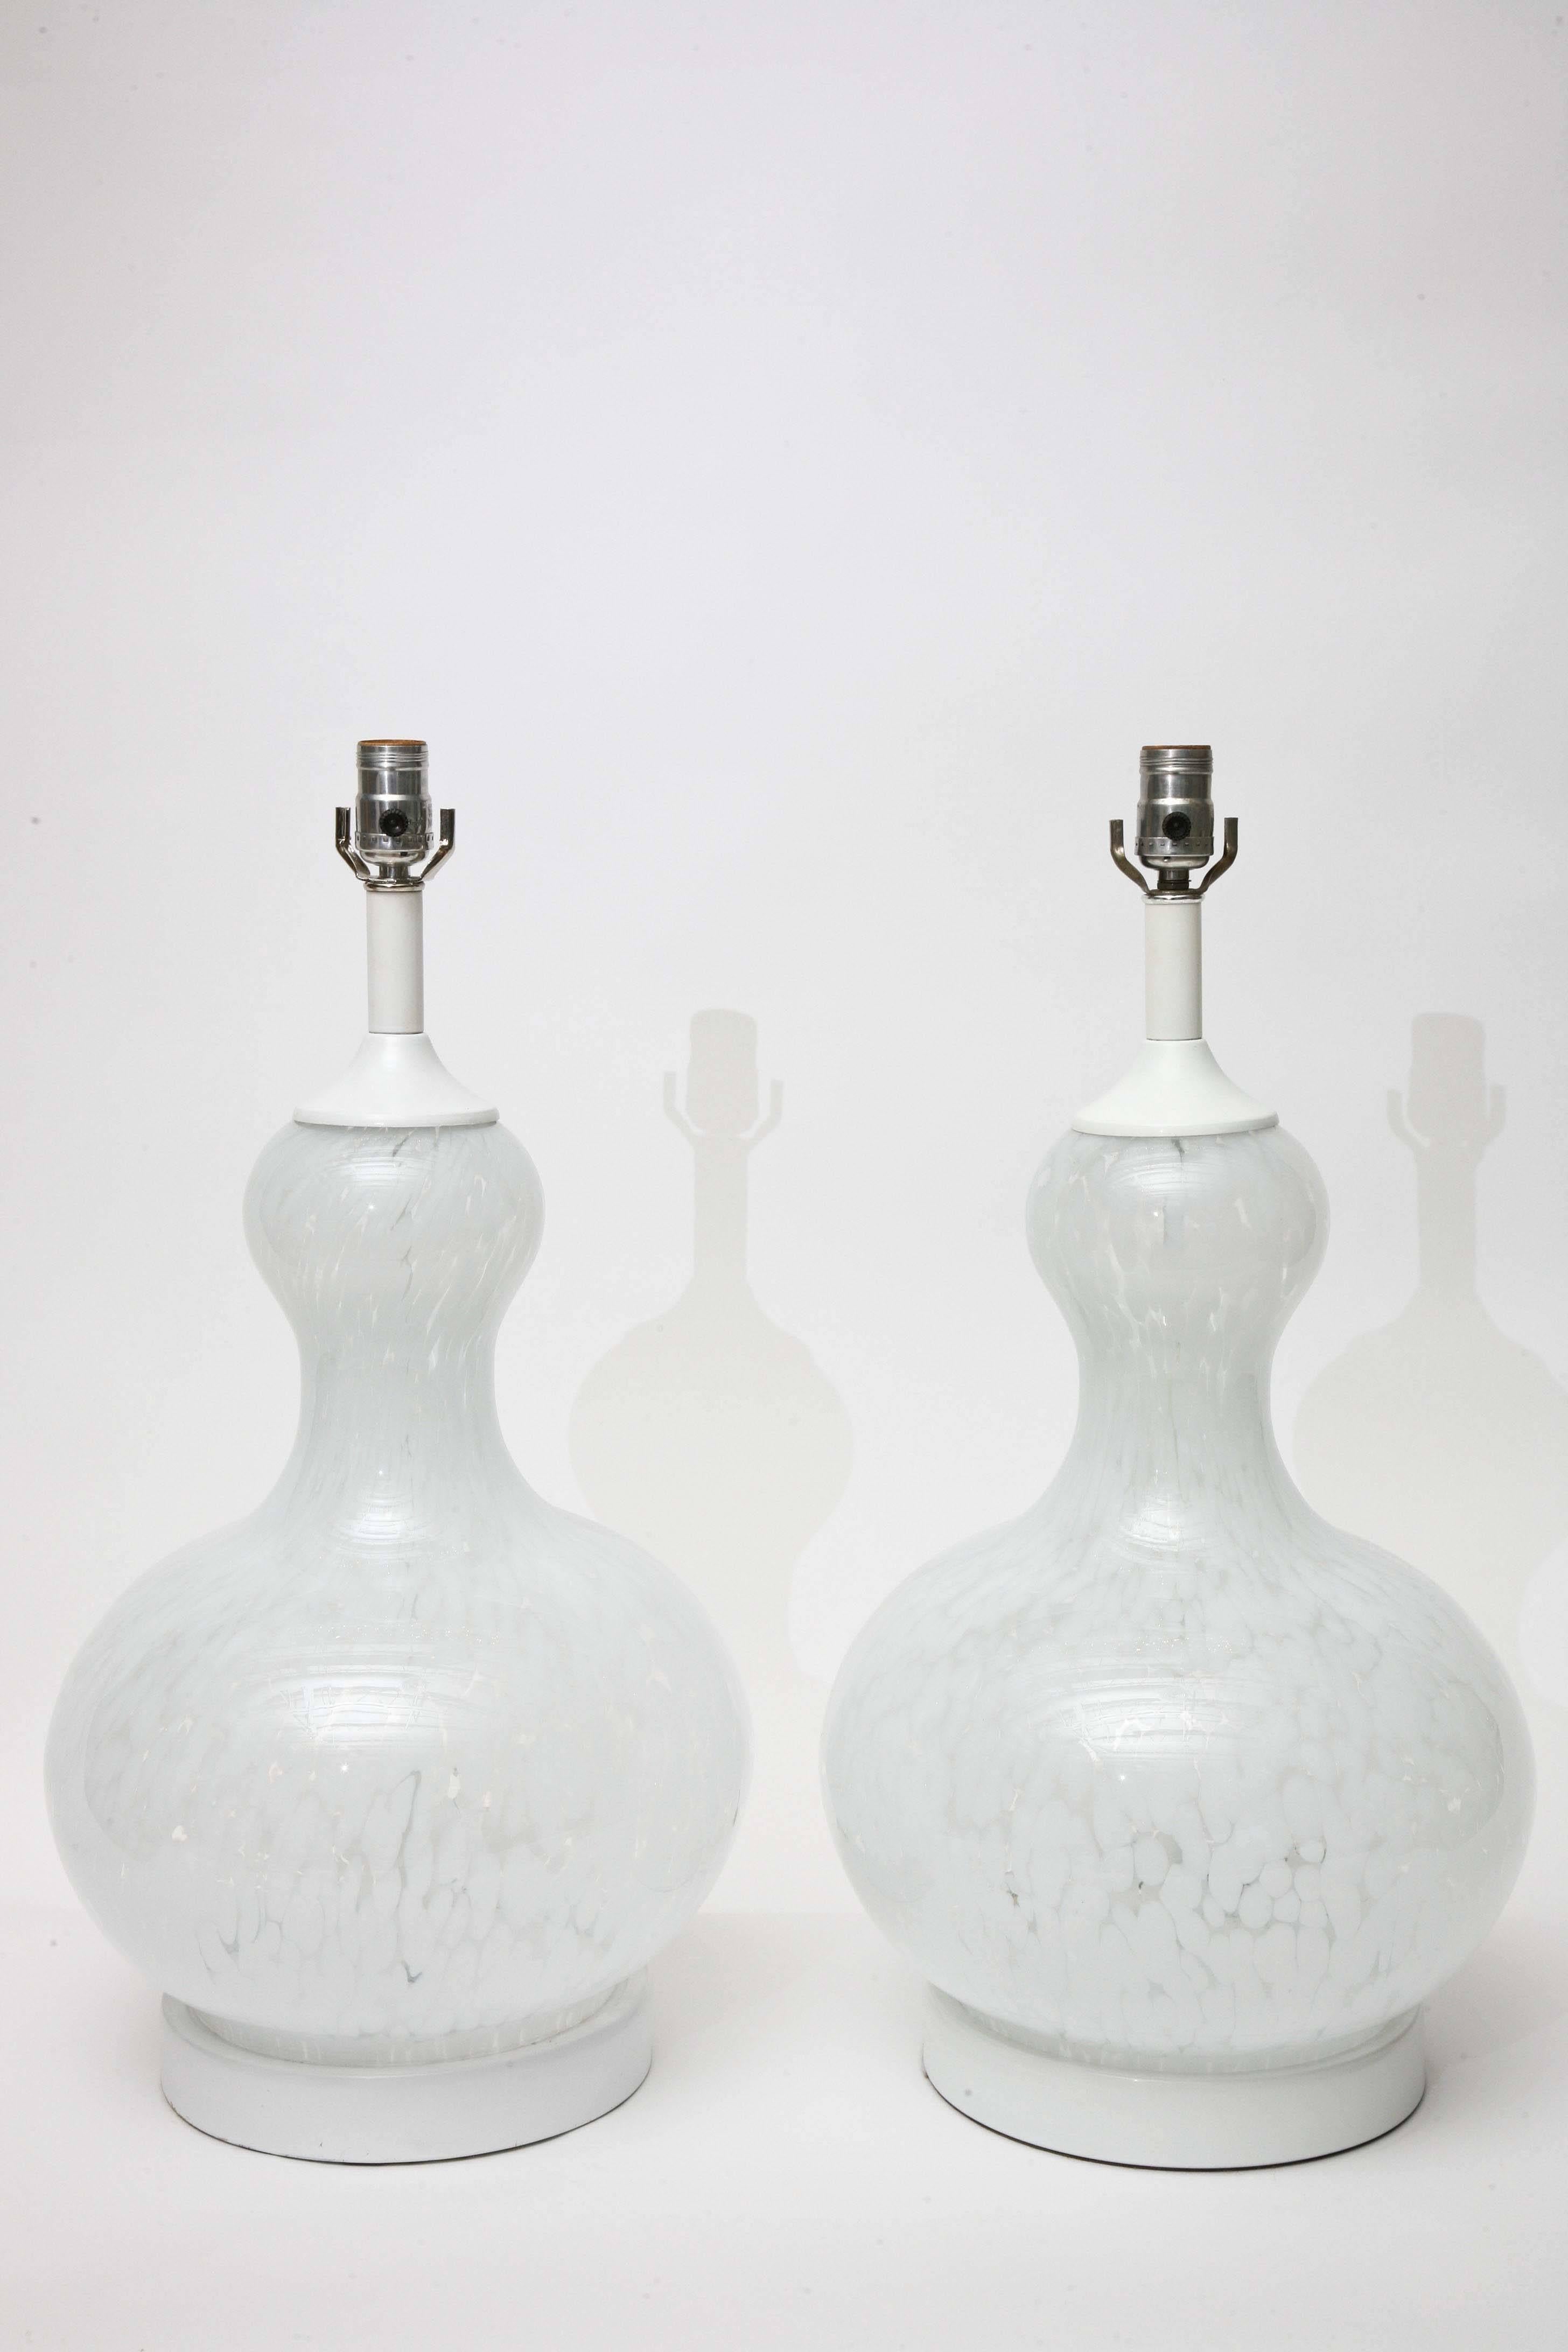 Lampes mouchetées blanches et transparentes en verre de Murano soufflé à la bouche avec cols et bases en métal peint d'origine, vers 1970. Les mesures ci-dessous sont celles du haut de la douille.